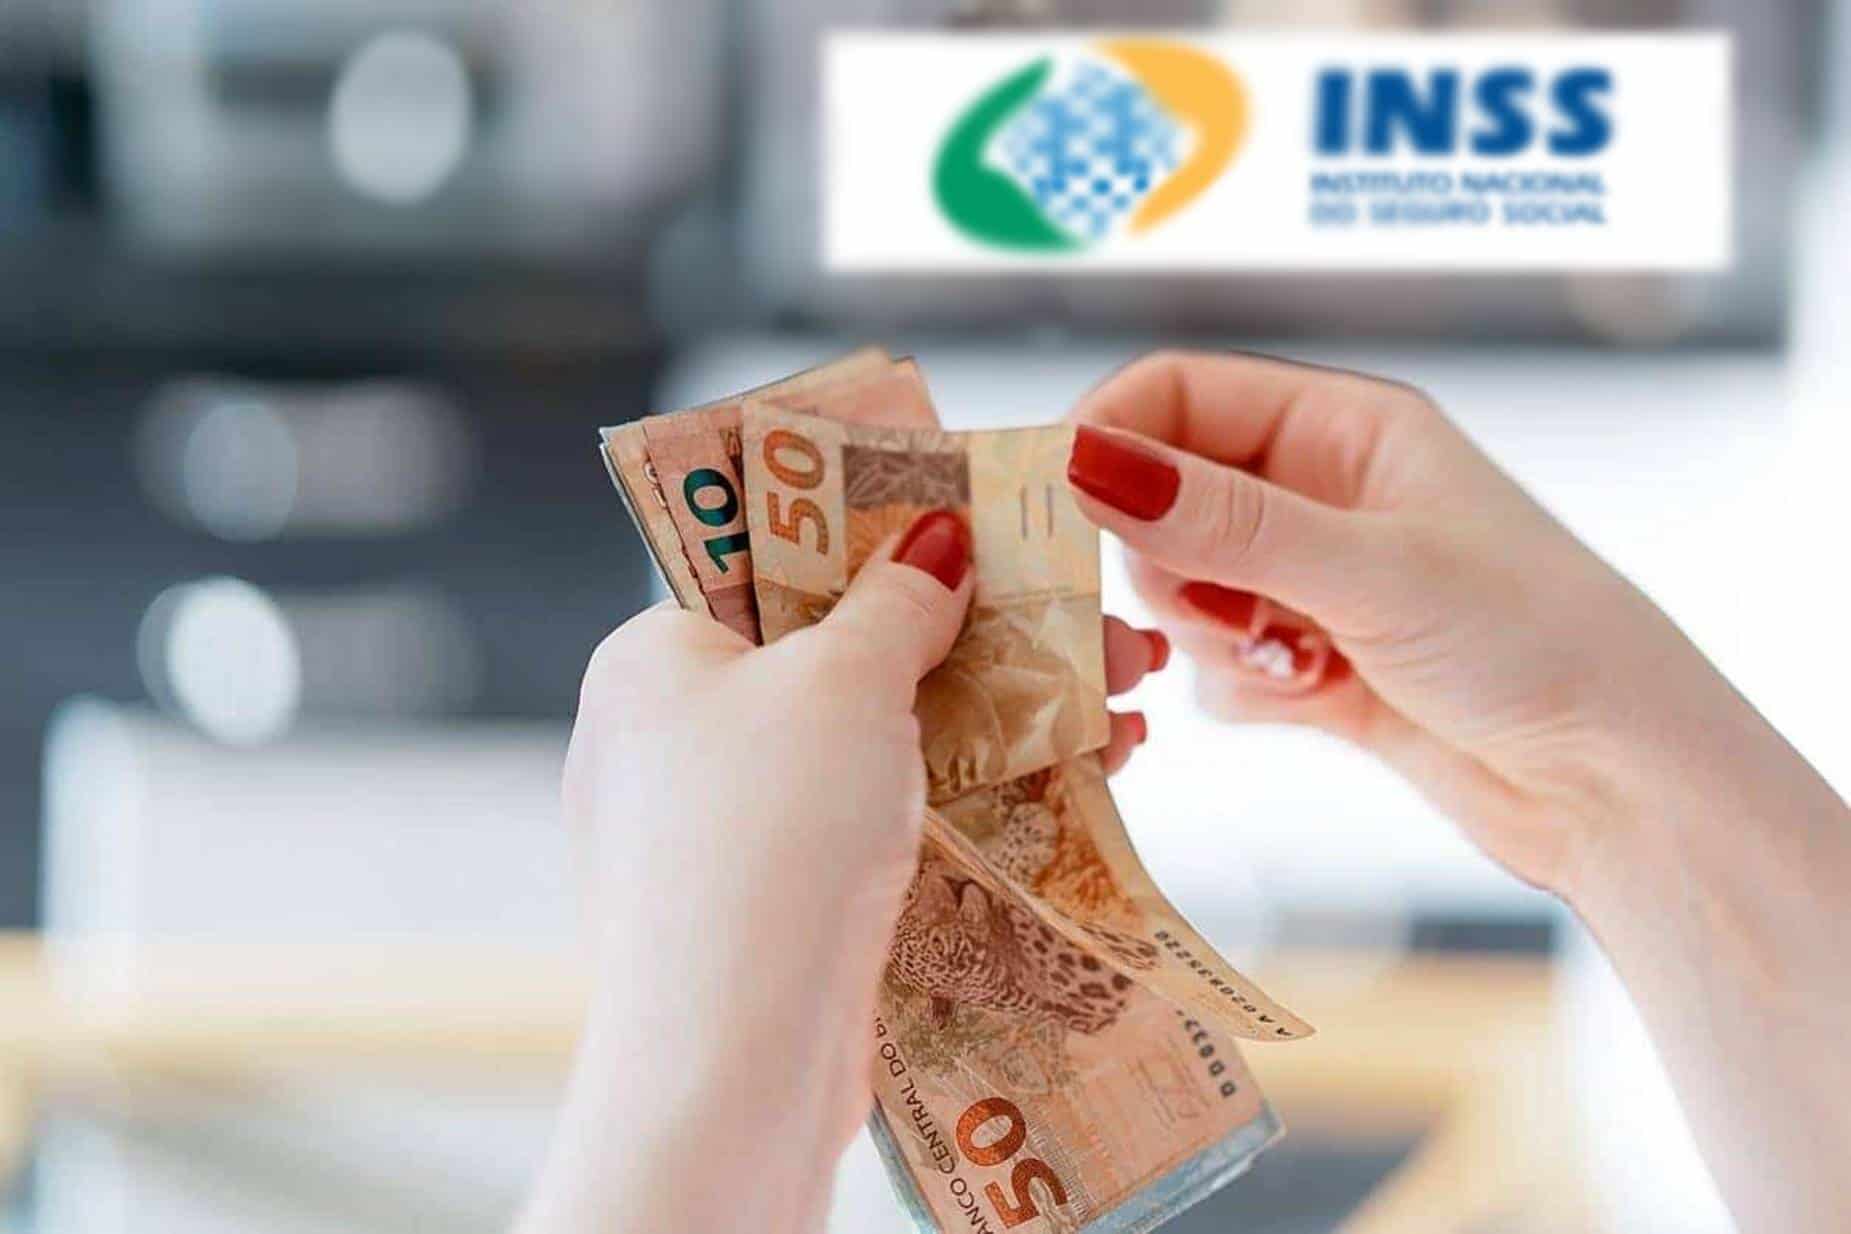 INSS libera novas datas de pagamentos - veja calendário atualizado!